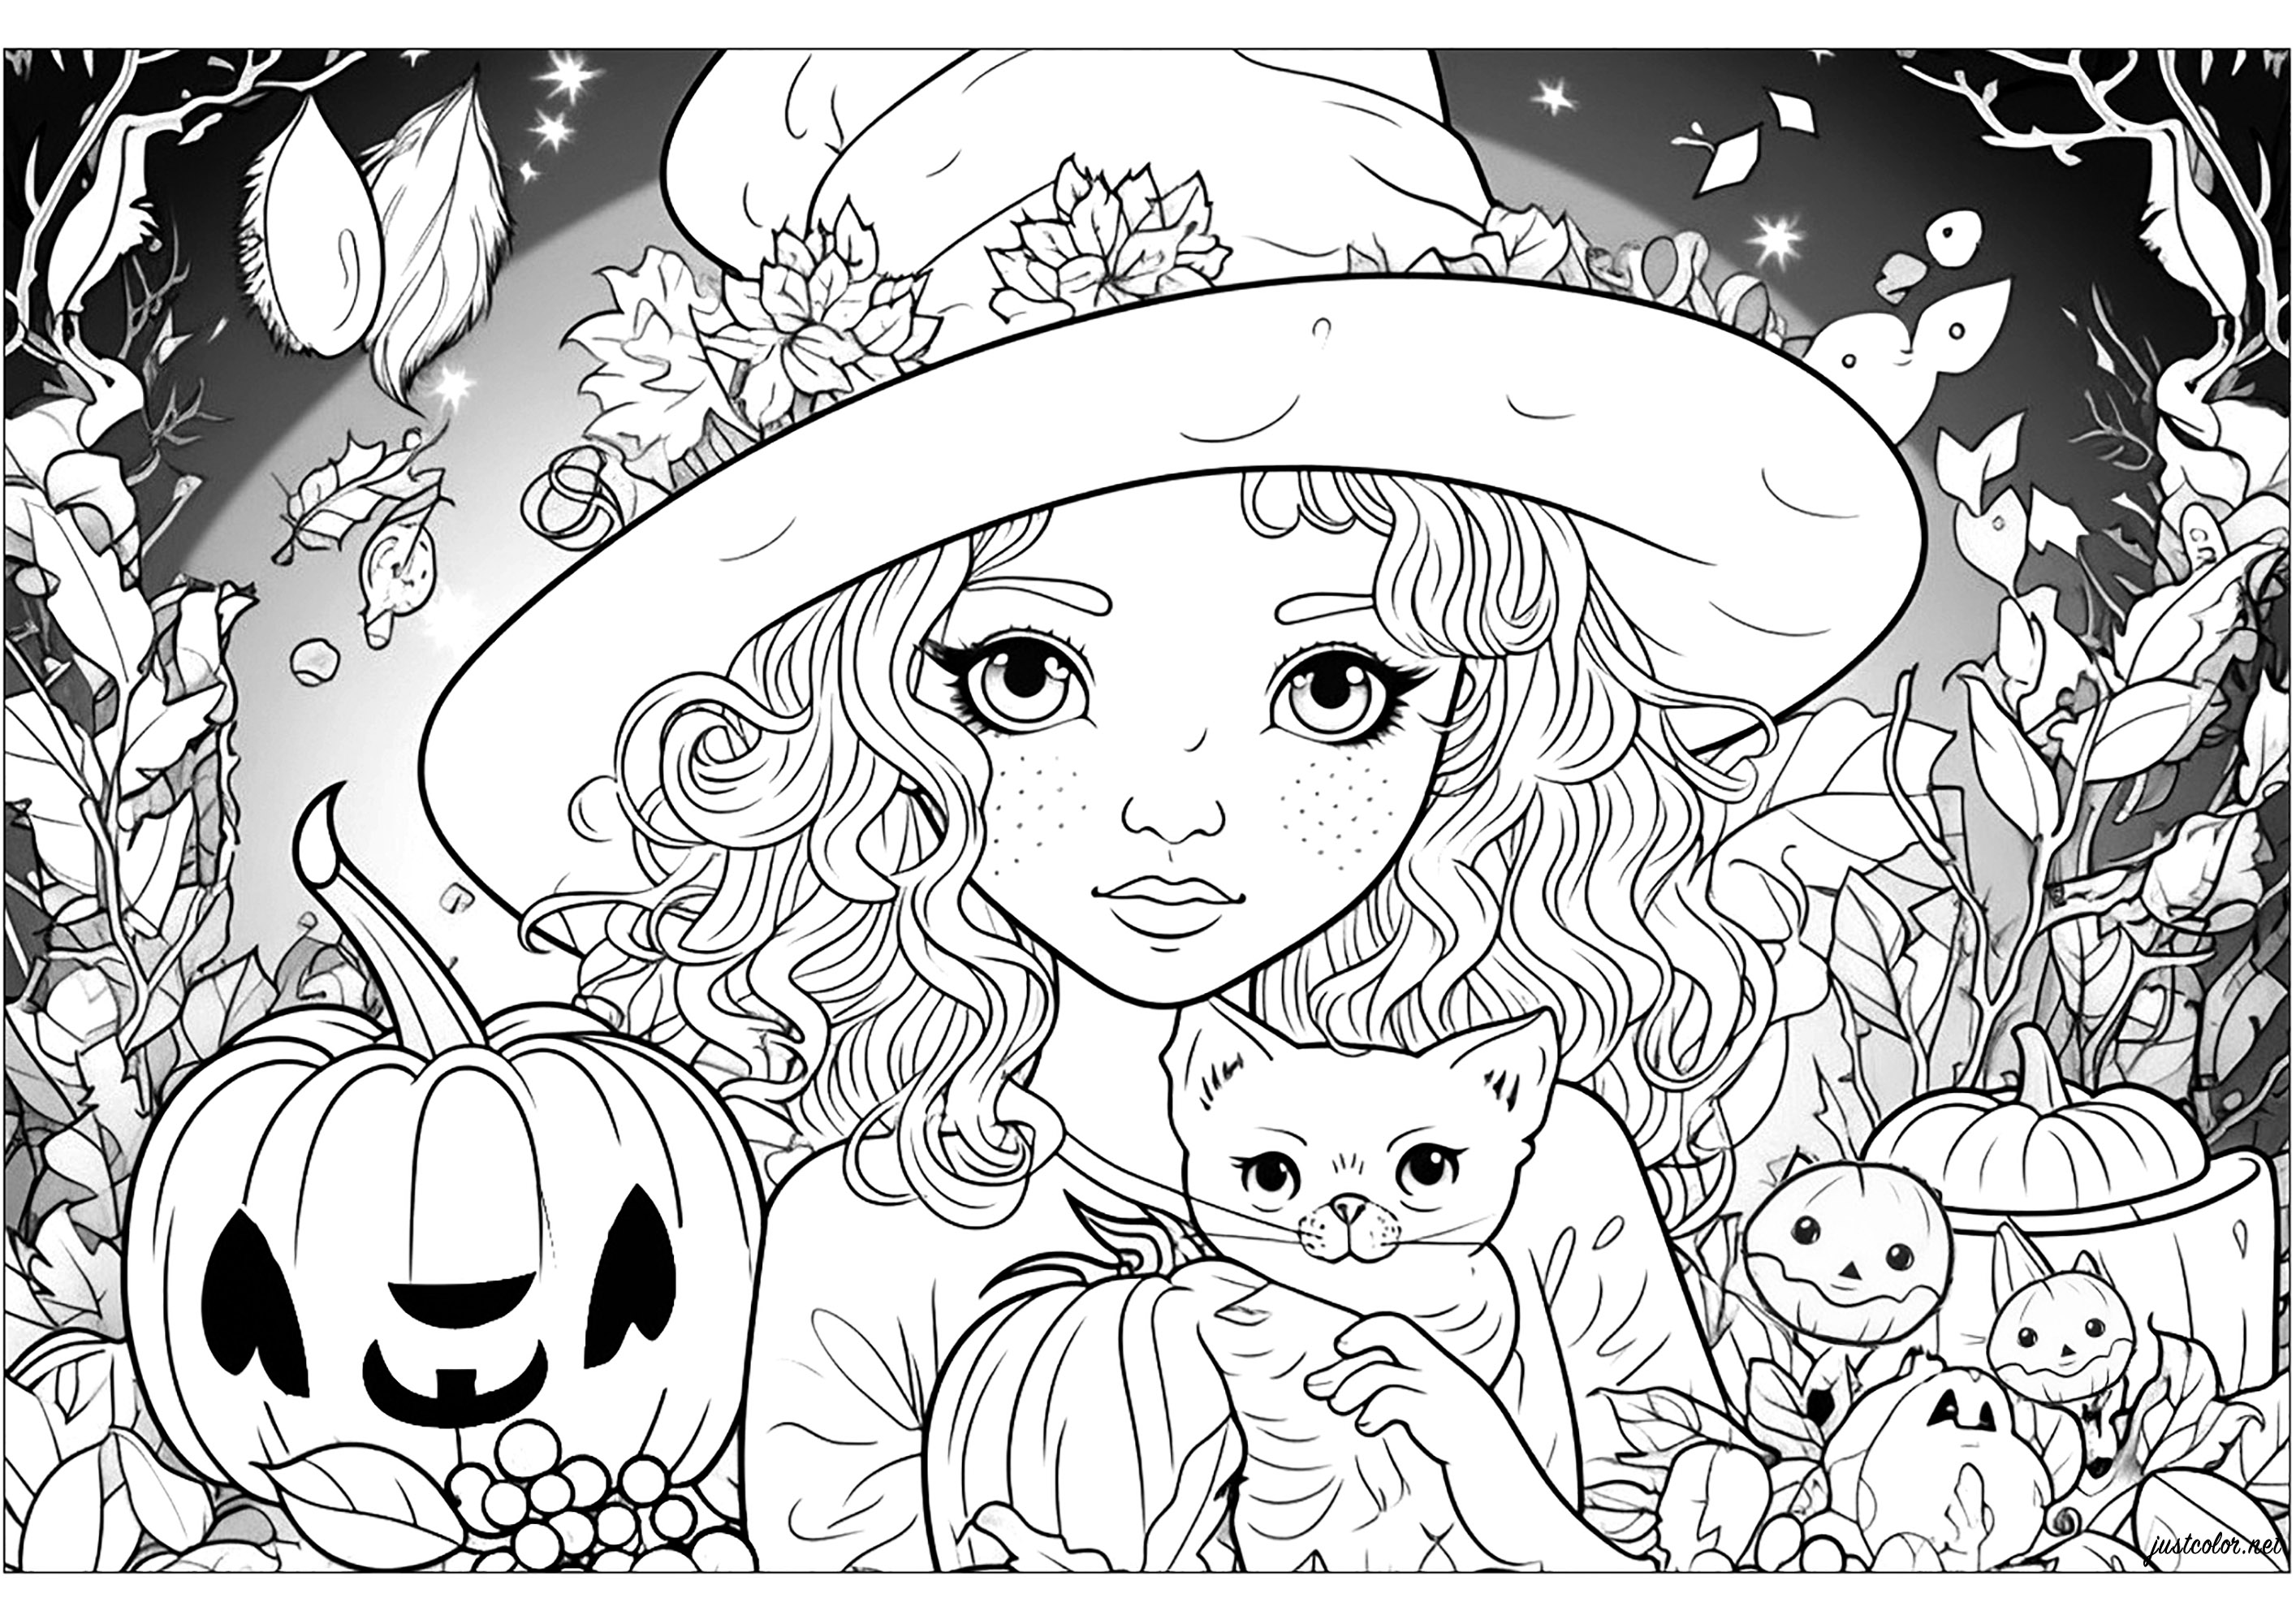 A bruxa encantadora e o seu gato - Dia das Bruxas - Coloring Pages